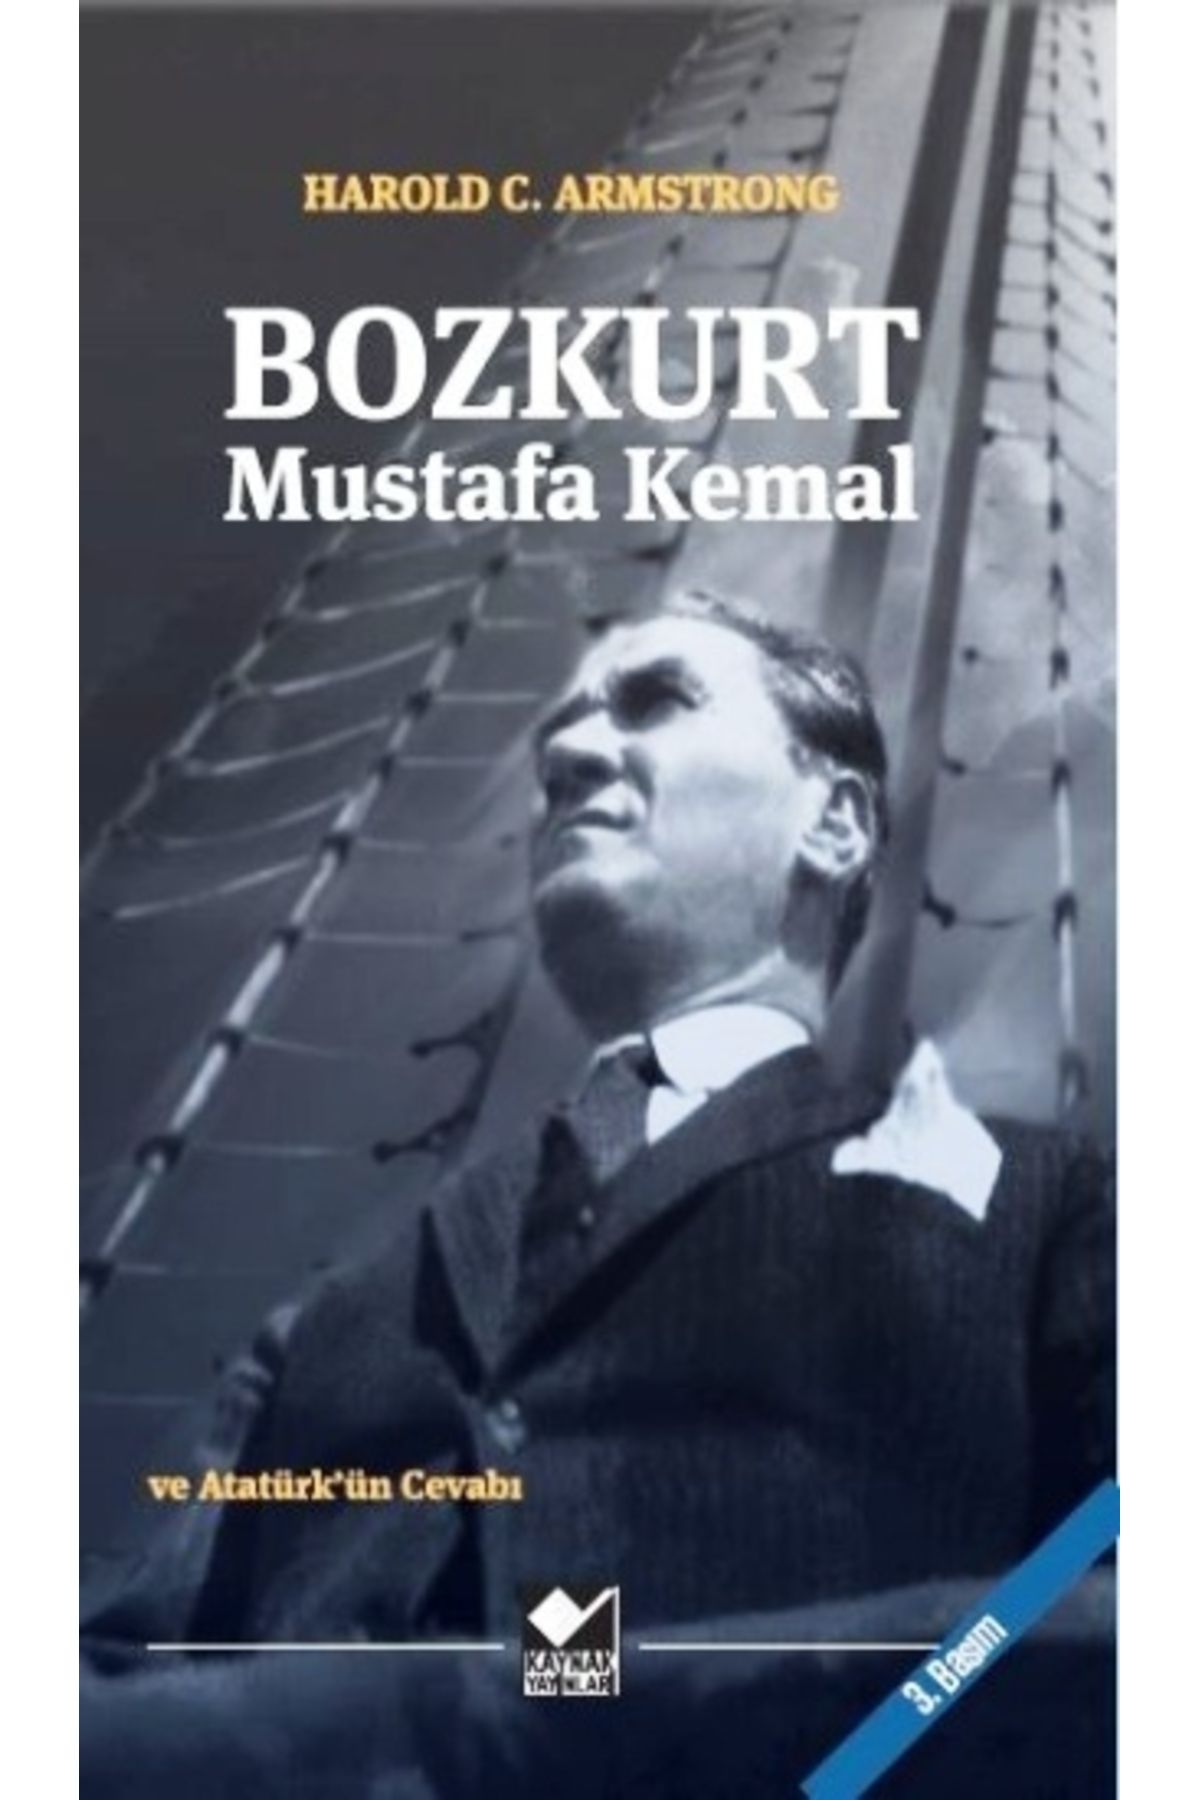 Kaynak Yayınları Bozkurt Mustafa Kemal Ve Atatürk'ün Cevabı